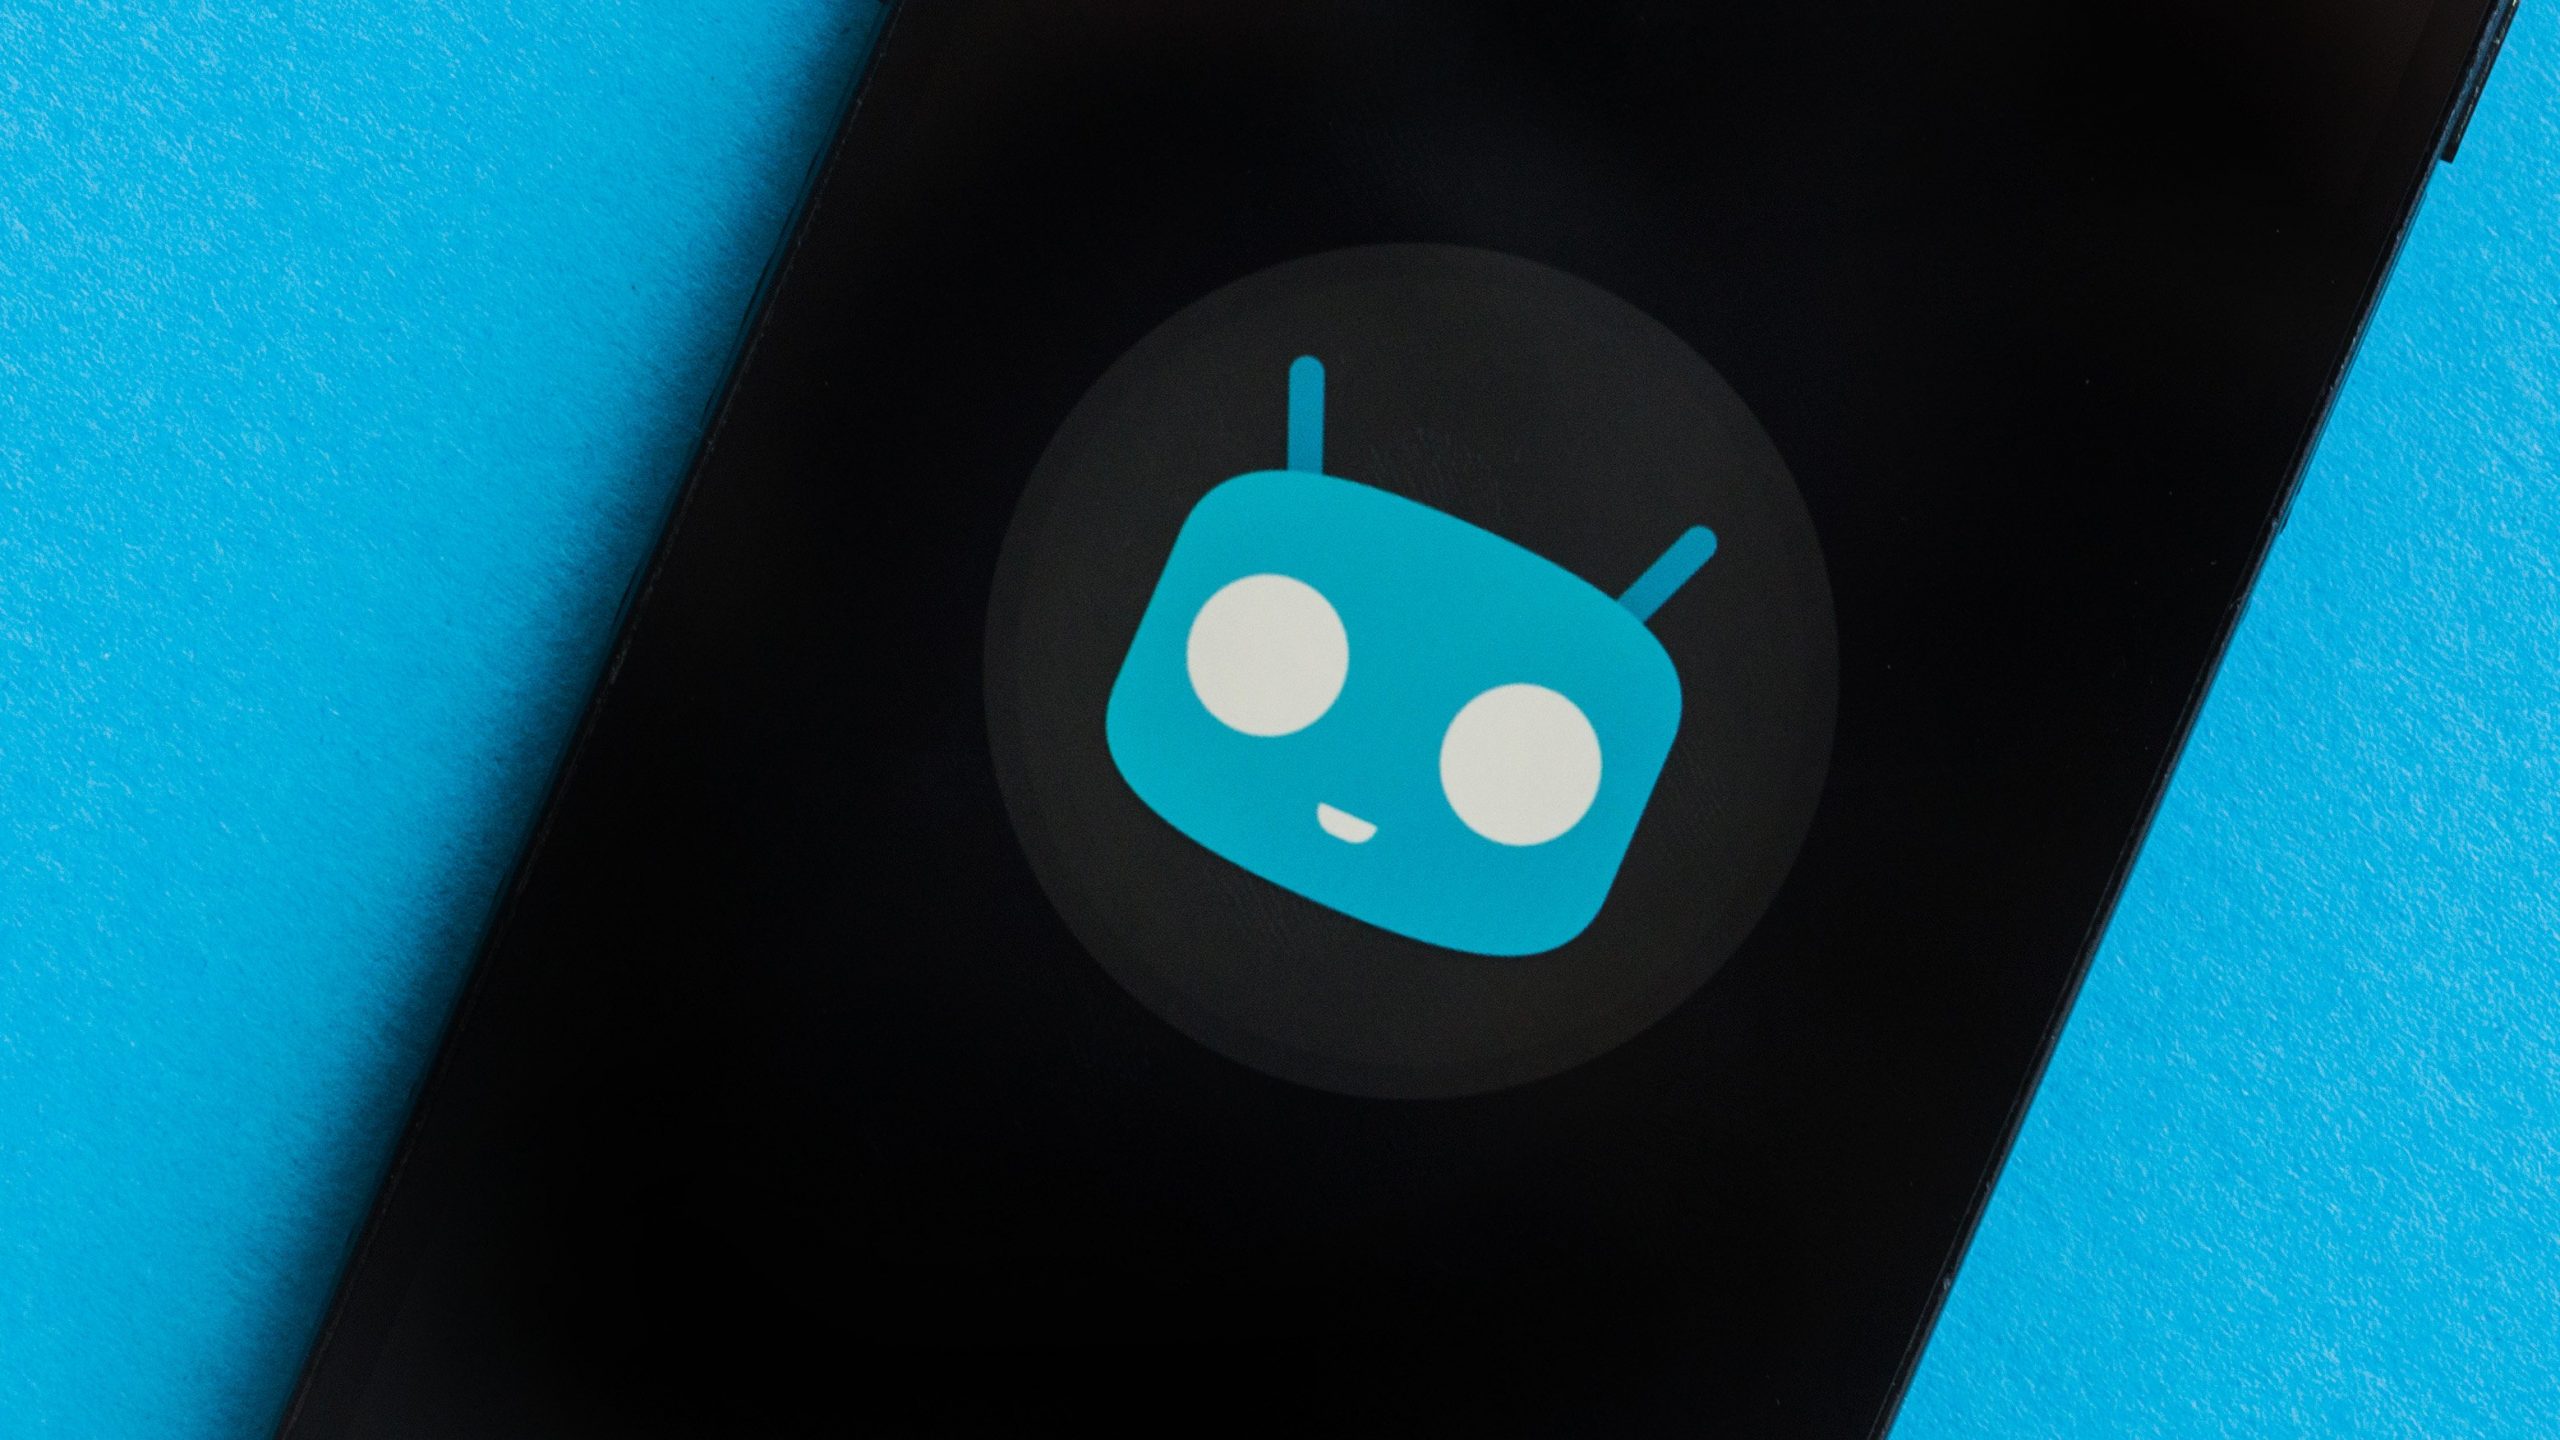 Perubahan komunitas: Cyanogen Inc. sekarang menjadi Andrasta